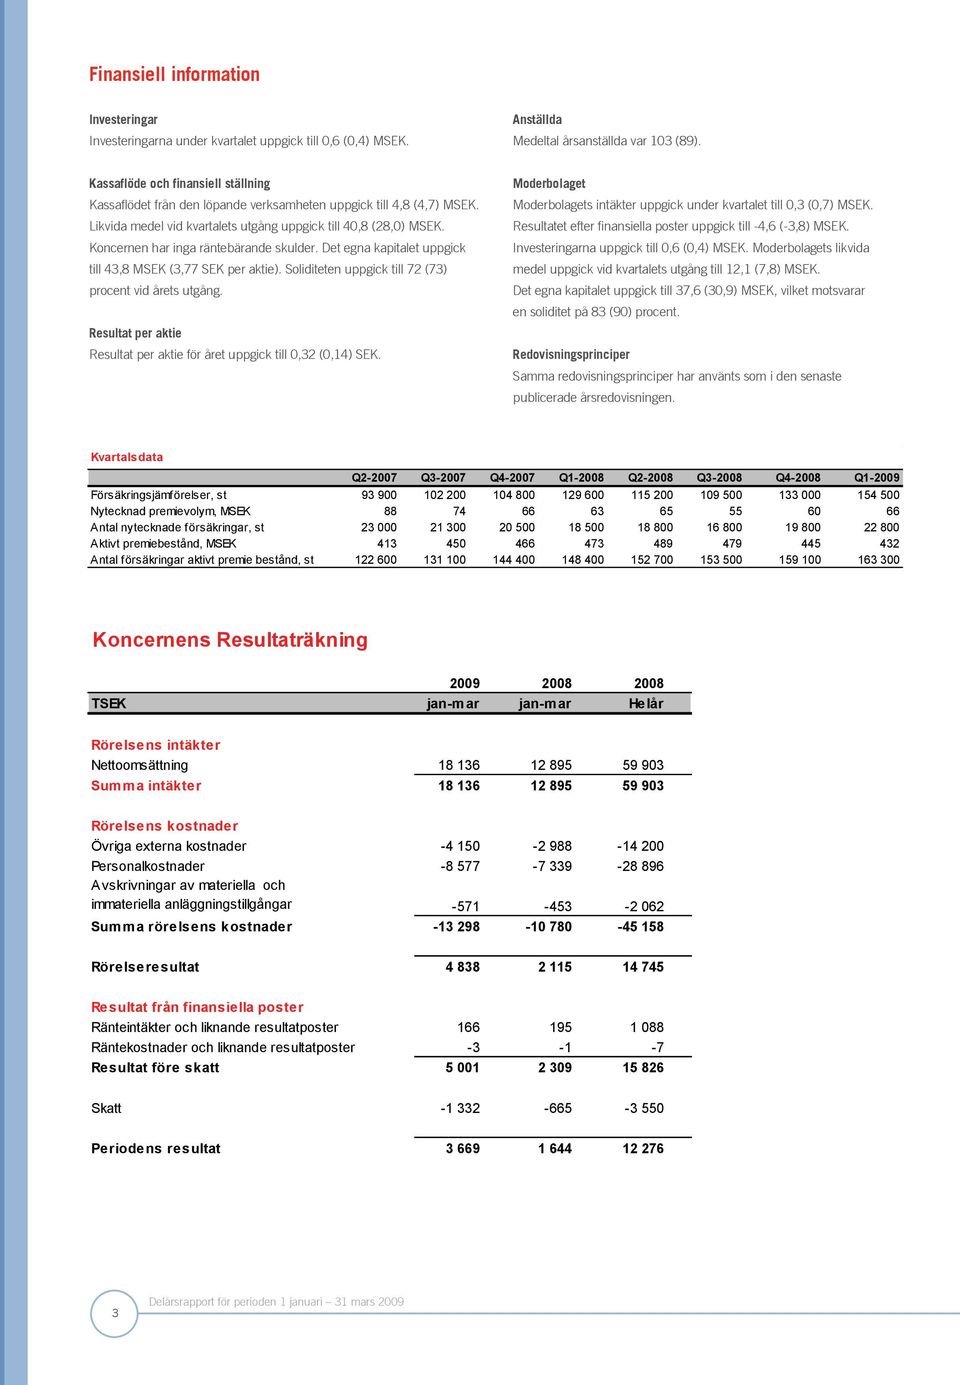 Koncernen har inga räntebärande skulder. Det egna kapitalet uppgick till 43,8 MSEK (3,77 SEK per aktie). Soliditeten uppgick till 72 (73) procent vid årets utgång.